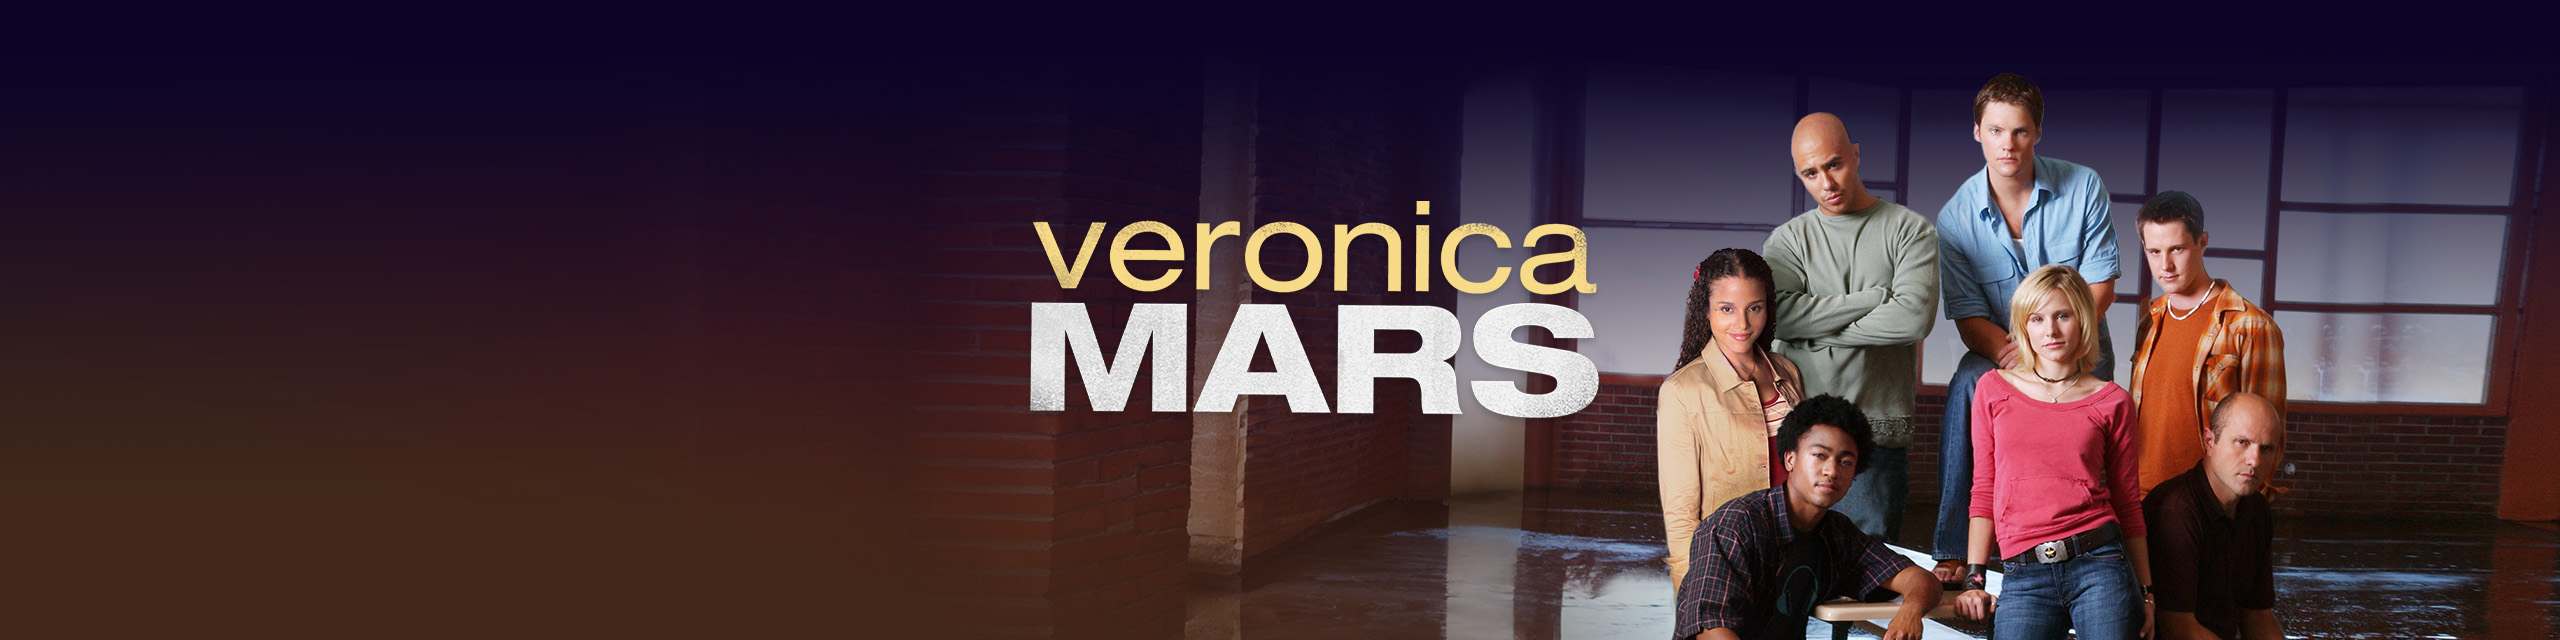 Veronica Mars, la série